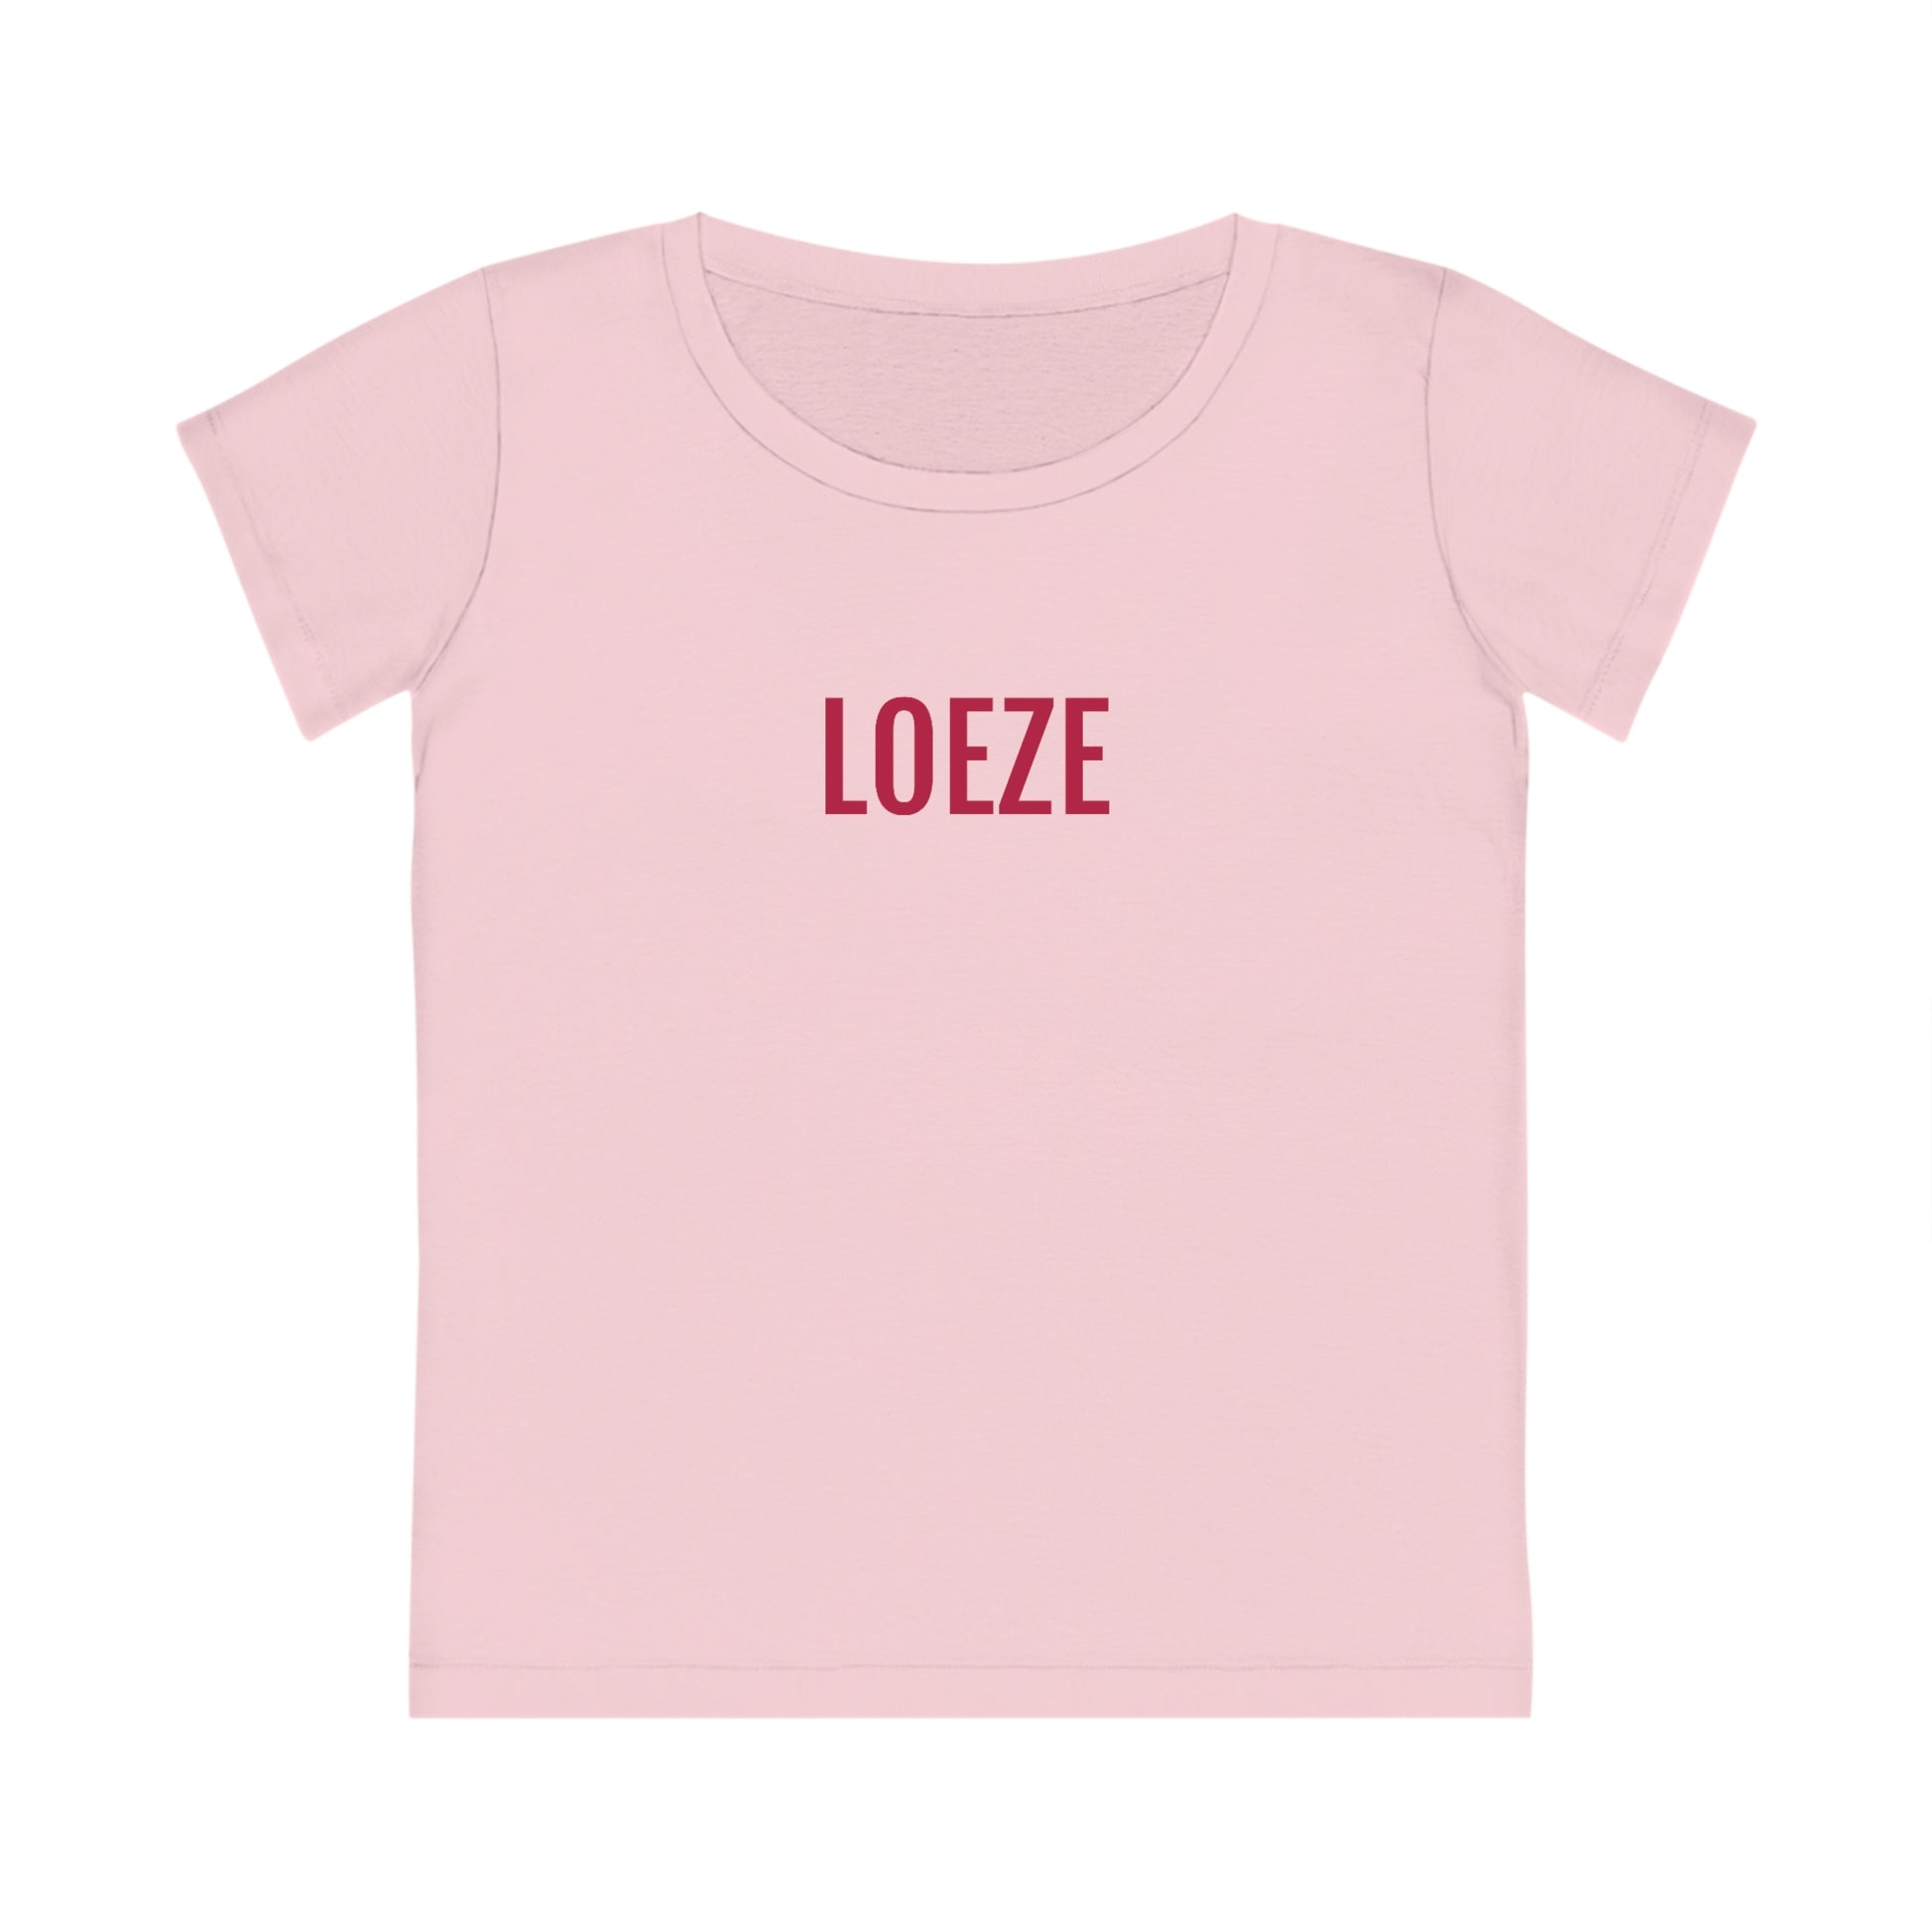 LOEZE | Dames T-Shirt uit Antwerpen